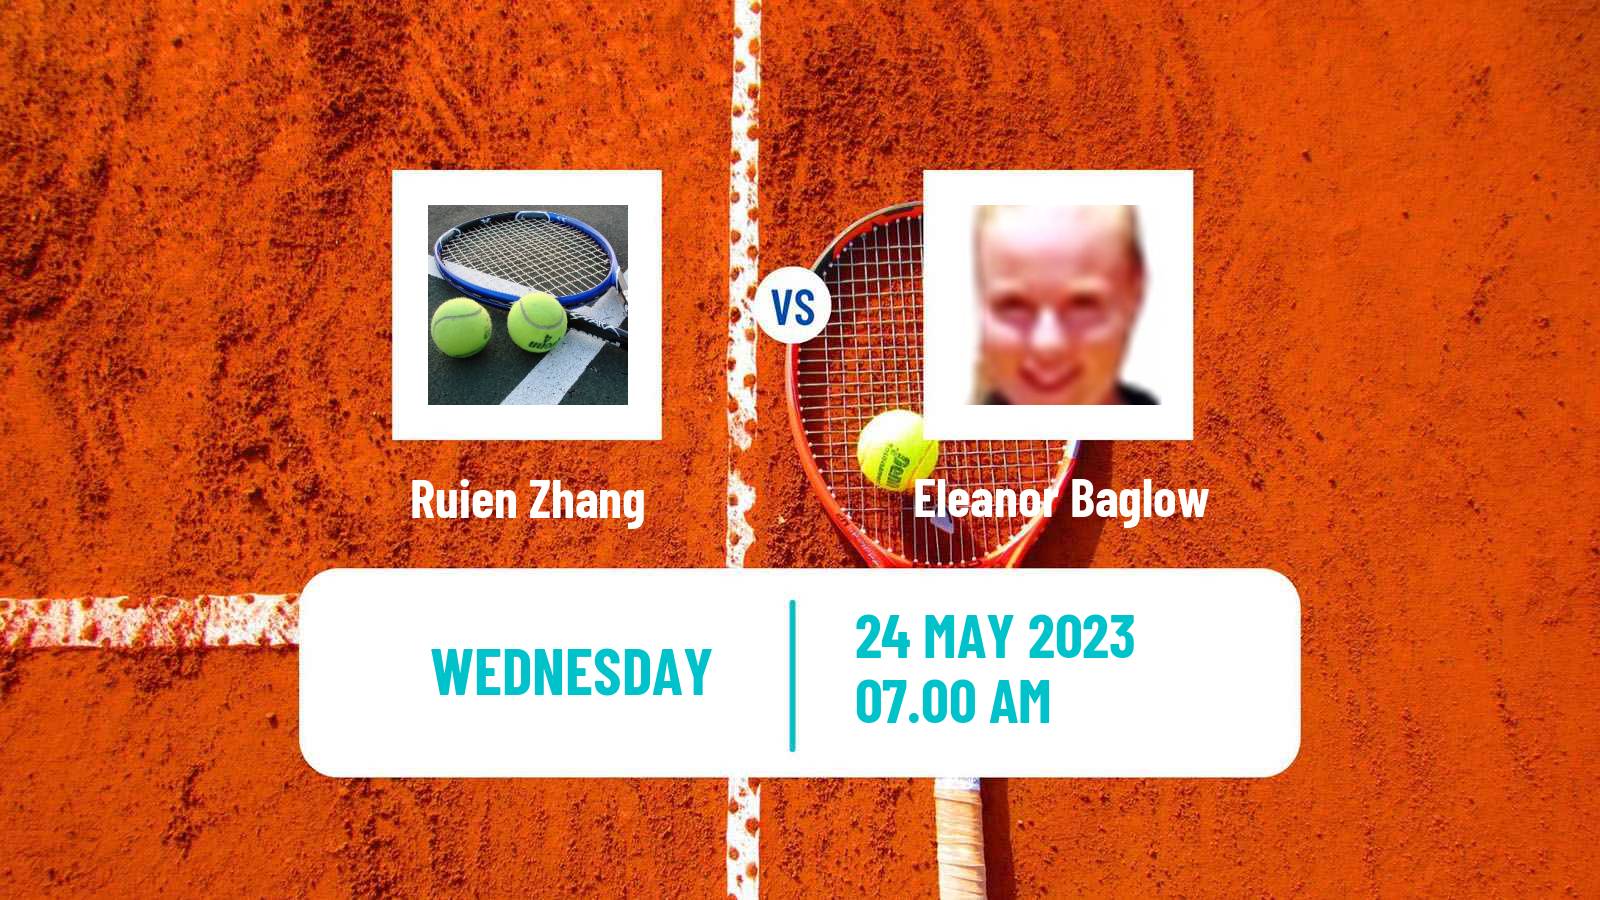 Tennis ITF W15 Kursumlijska Banja 5 Women Ruien Zhang - Eleanor Baglow